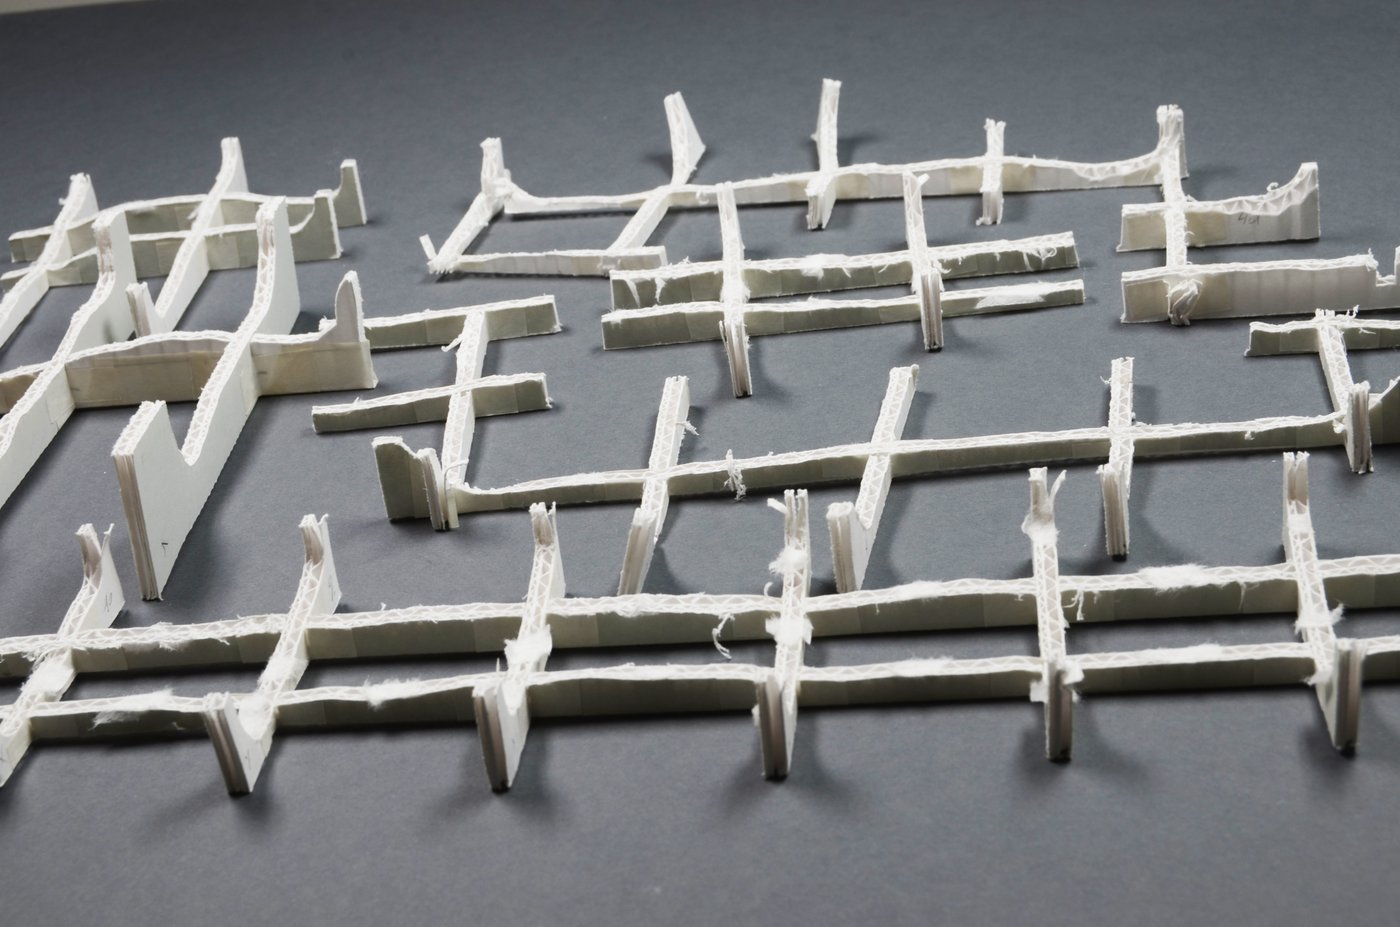 
   Stützkonstruktion für ein Objekt aus Papiermaché.
   
   Foto: Sigrid Eyb-Green
  
